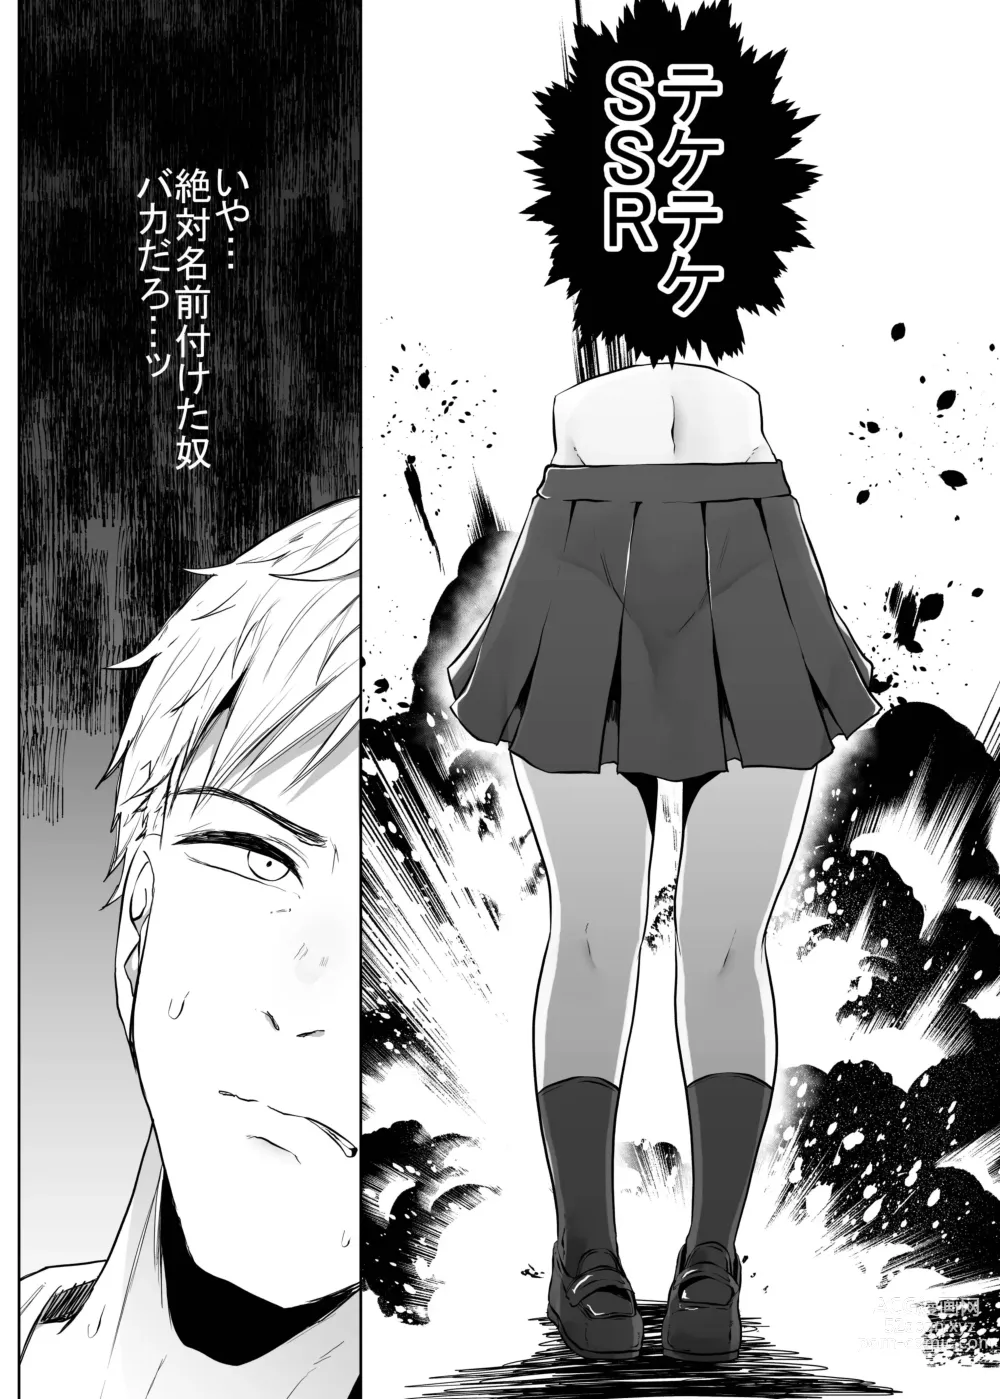 Page 8 of doujinshi Teke Teke SSR